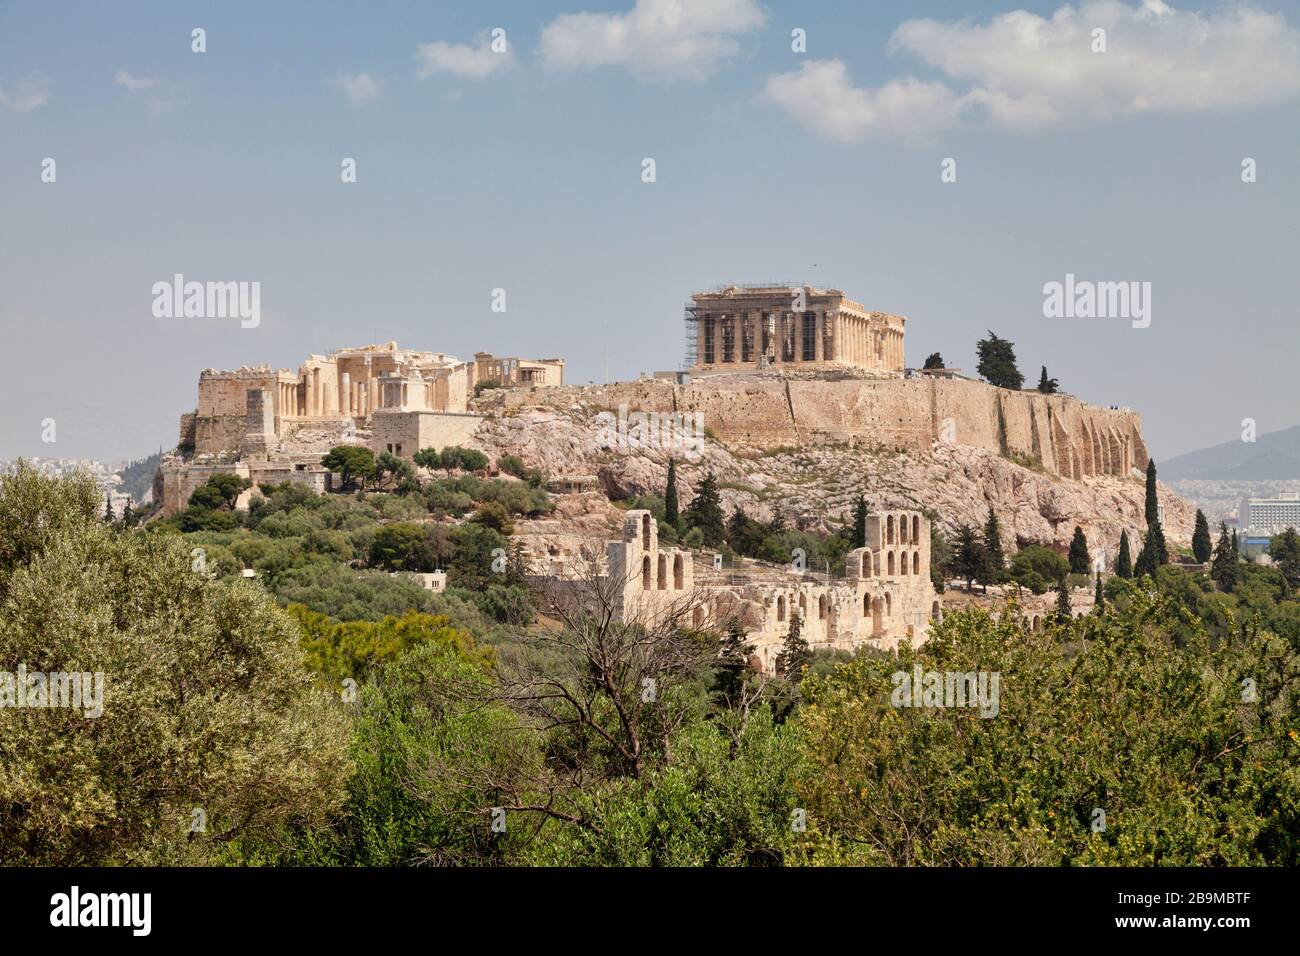 L'Acropoli di Atene è un'antica cittadella situata su uno sperone roccioso sopra la città che contiene le rovine di molti edifici antichi. Foto Stock